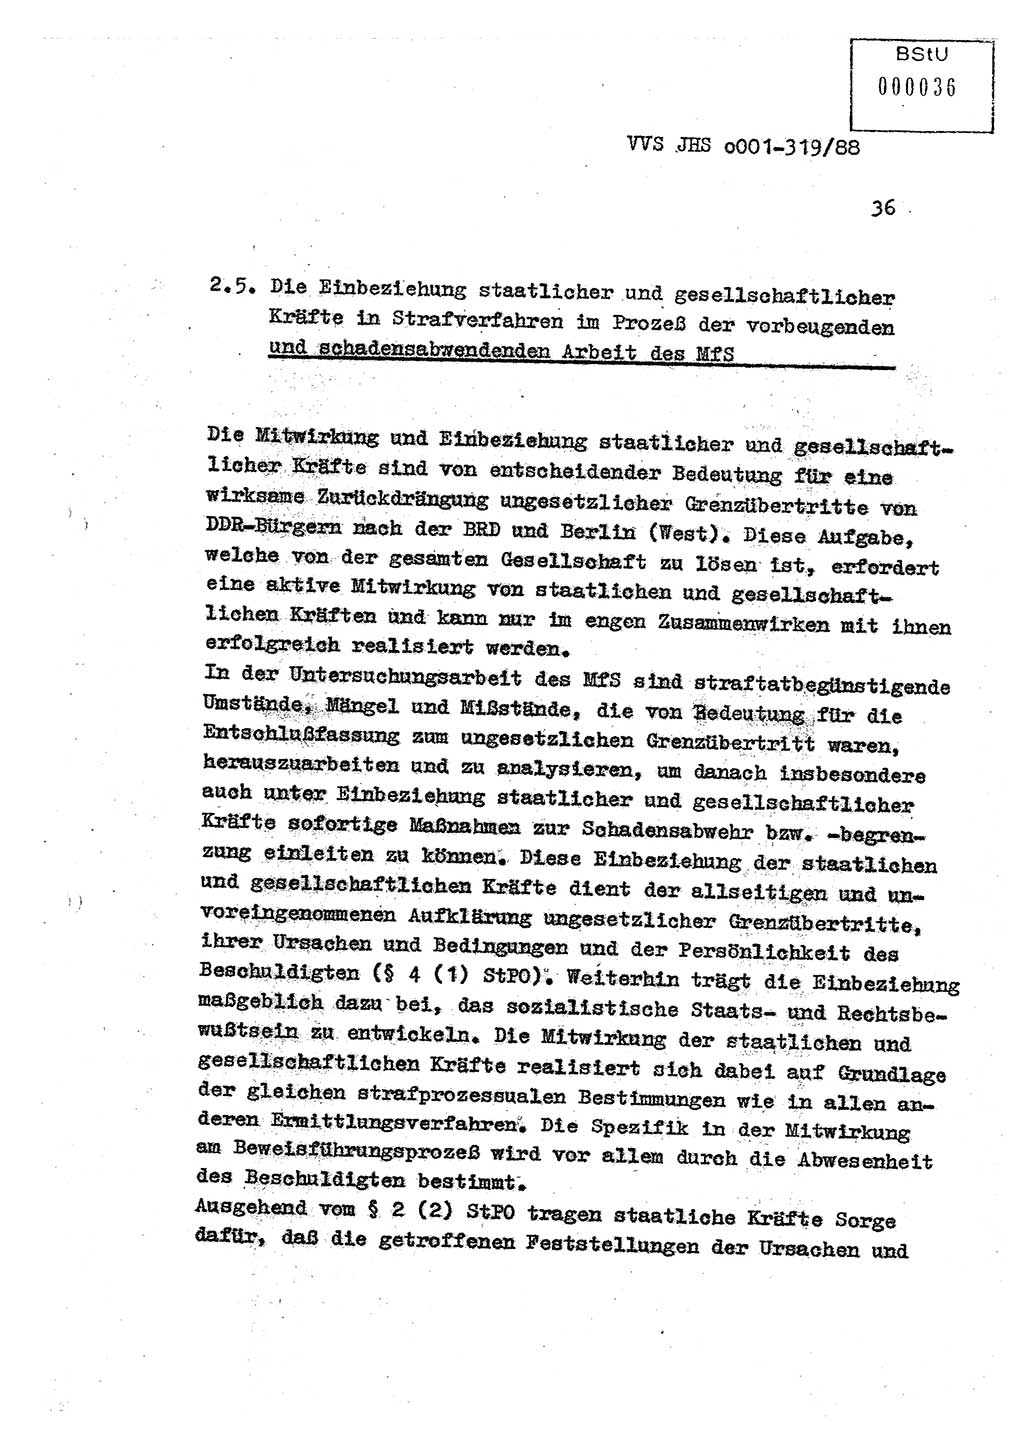 Diplomarbeit Offiziersschüler Holger Zirnstein (HA Ⅸ/9), Ministerium für Staatssicherheit (MfS) [Deutsche Demokratische Republik (DDR)], Juristische Hochschule (JHS), Vertrauliche Verschlußsache (VVS) o001-319/88, Potsdam 1988, Blatt 36 (Dipl.-Arb. MfS DDR JHS VVS o001-319/88 1988, Bl. 36)